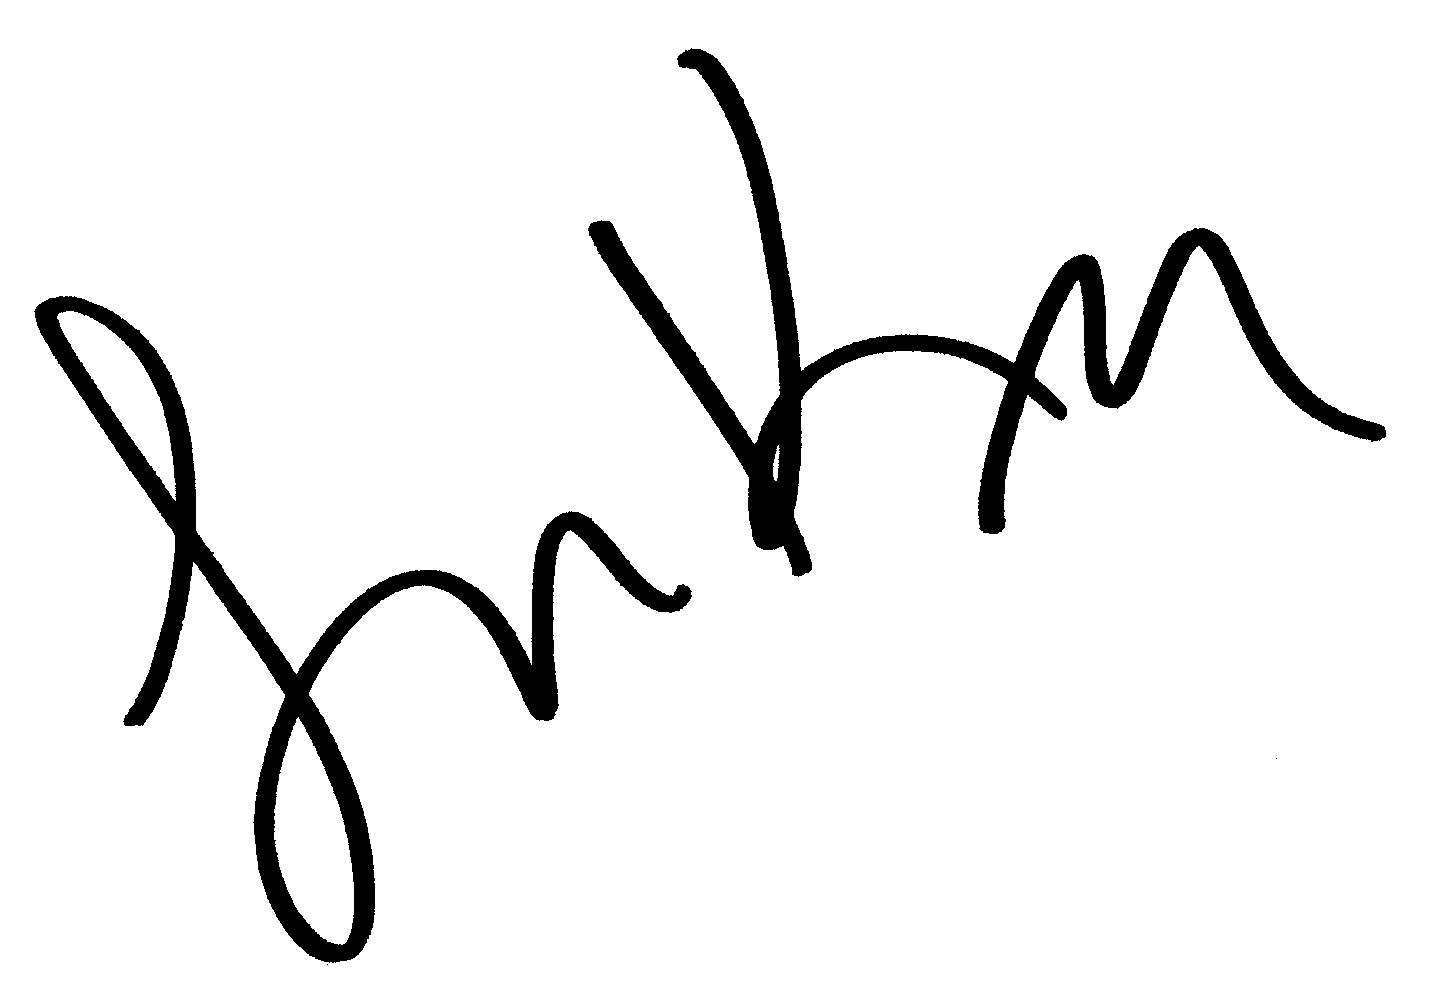 Larry King autograph facsimile